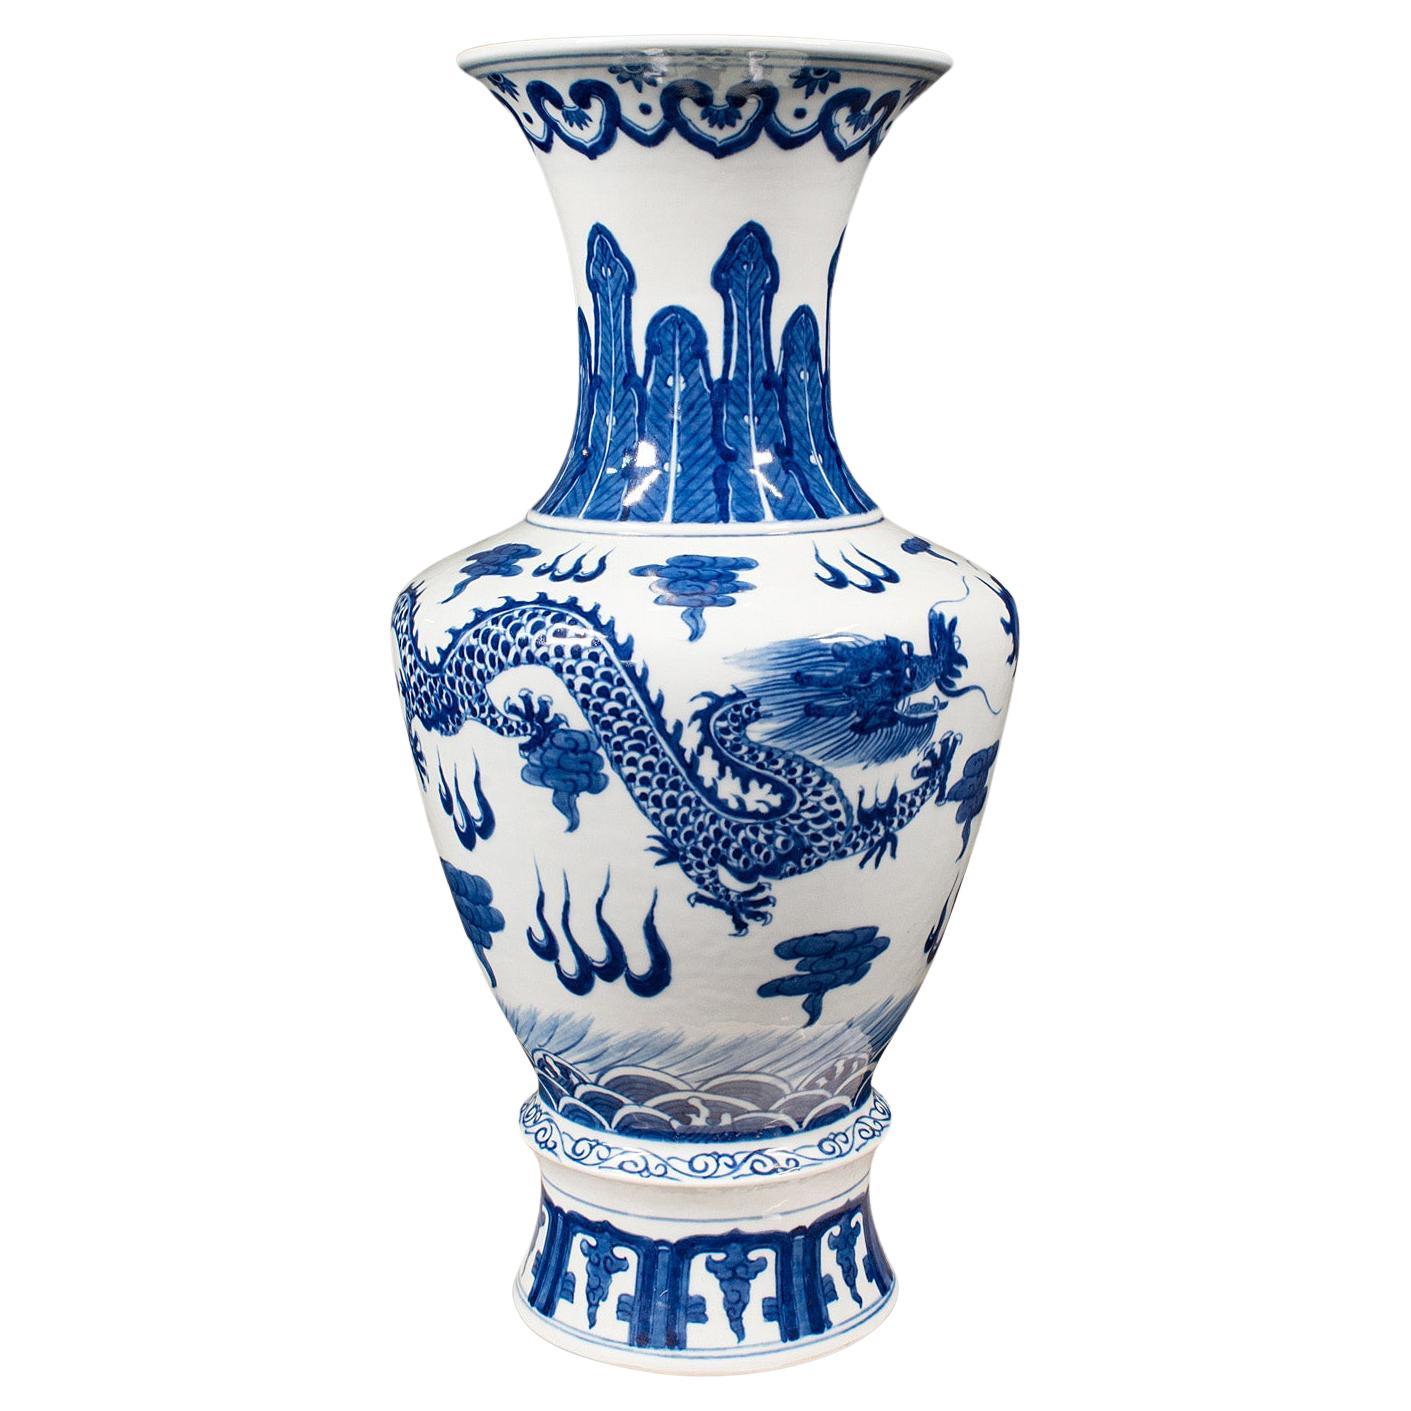 Grand vase vintage blanc et bleu, chinois, céramique, décoratif, fleur, Art déco